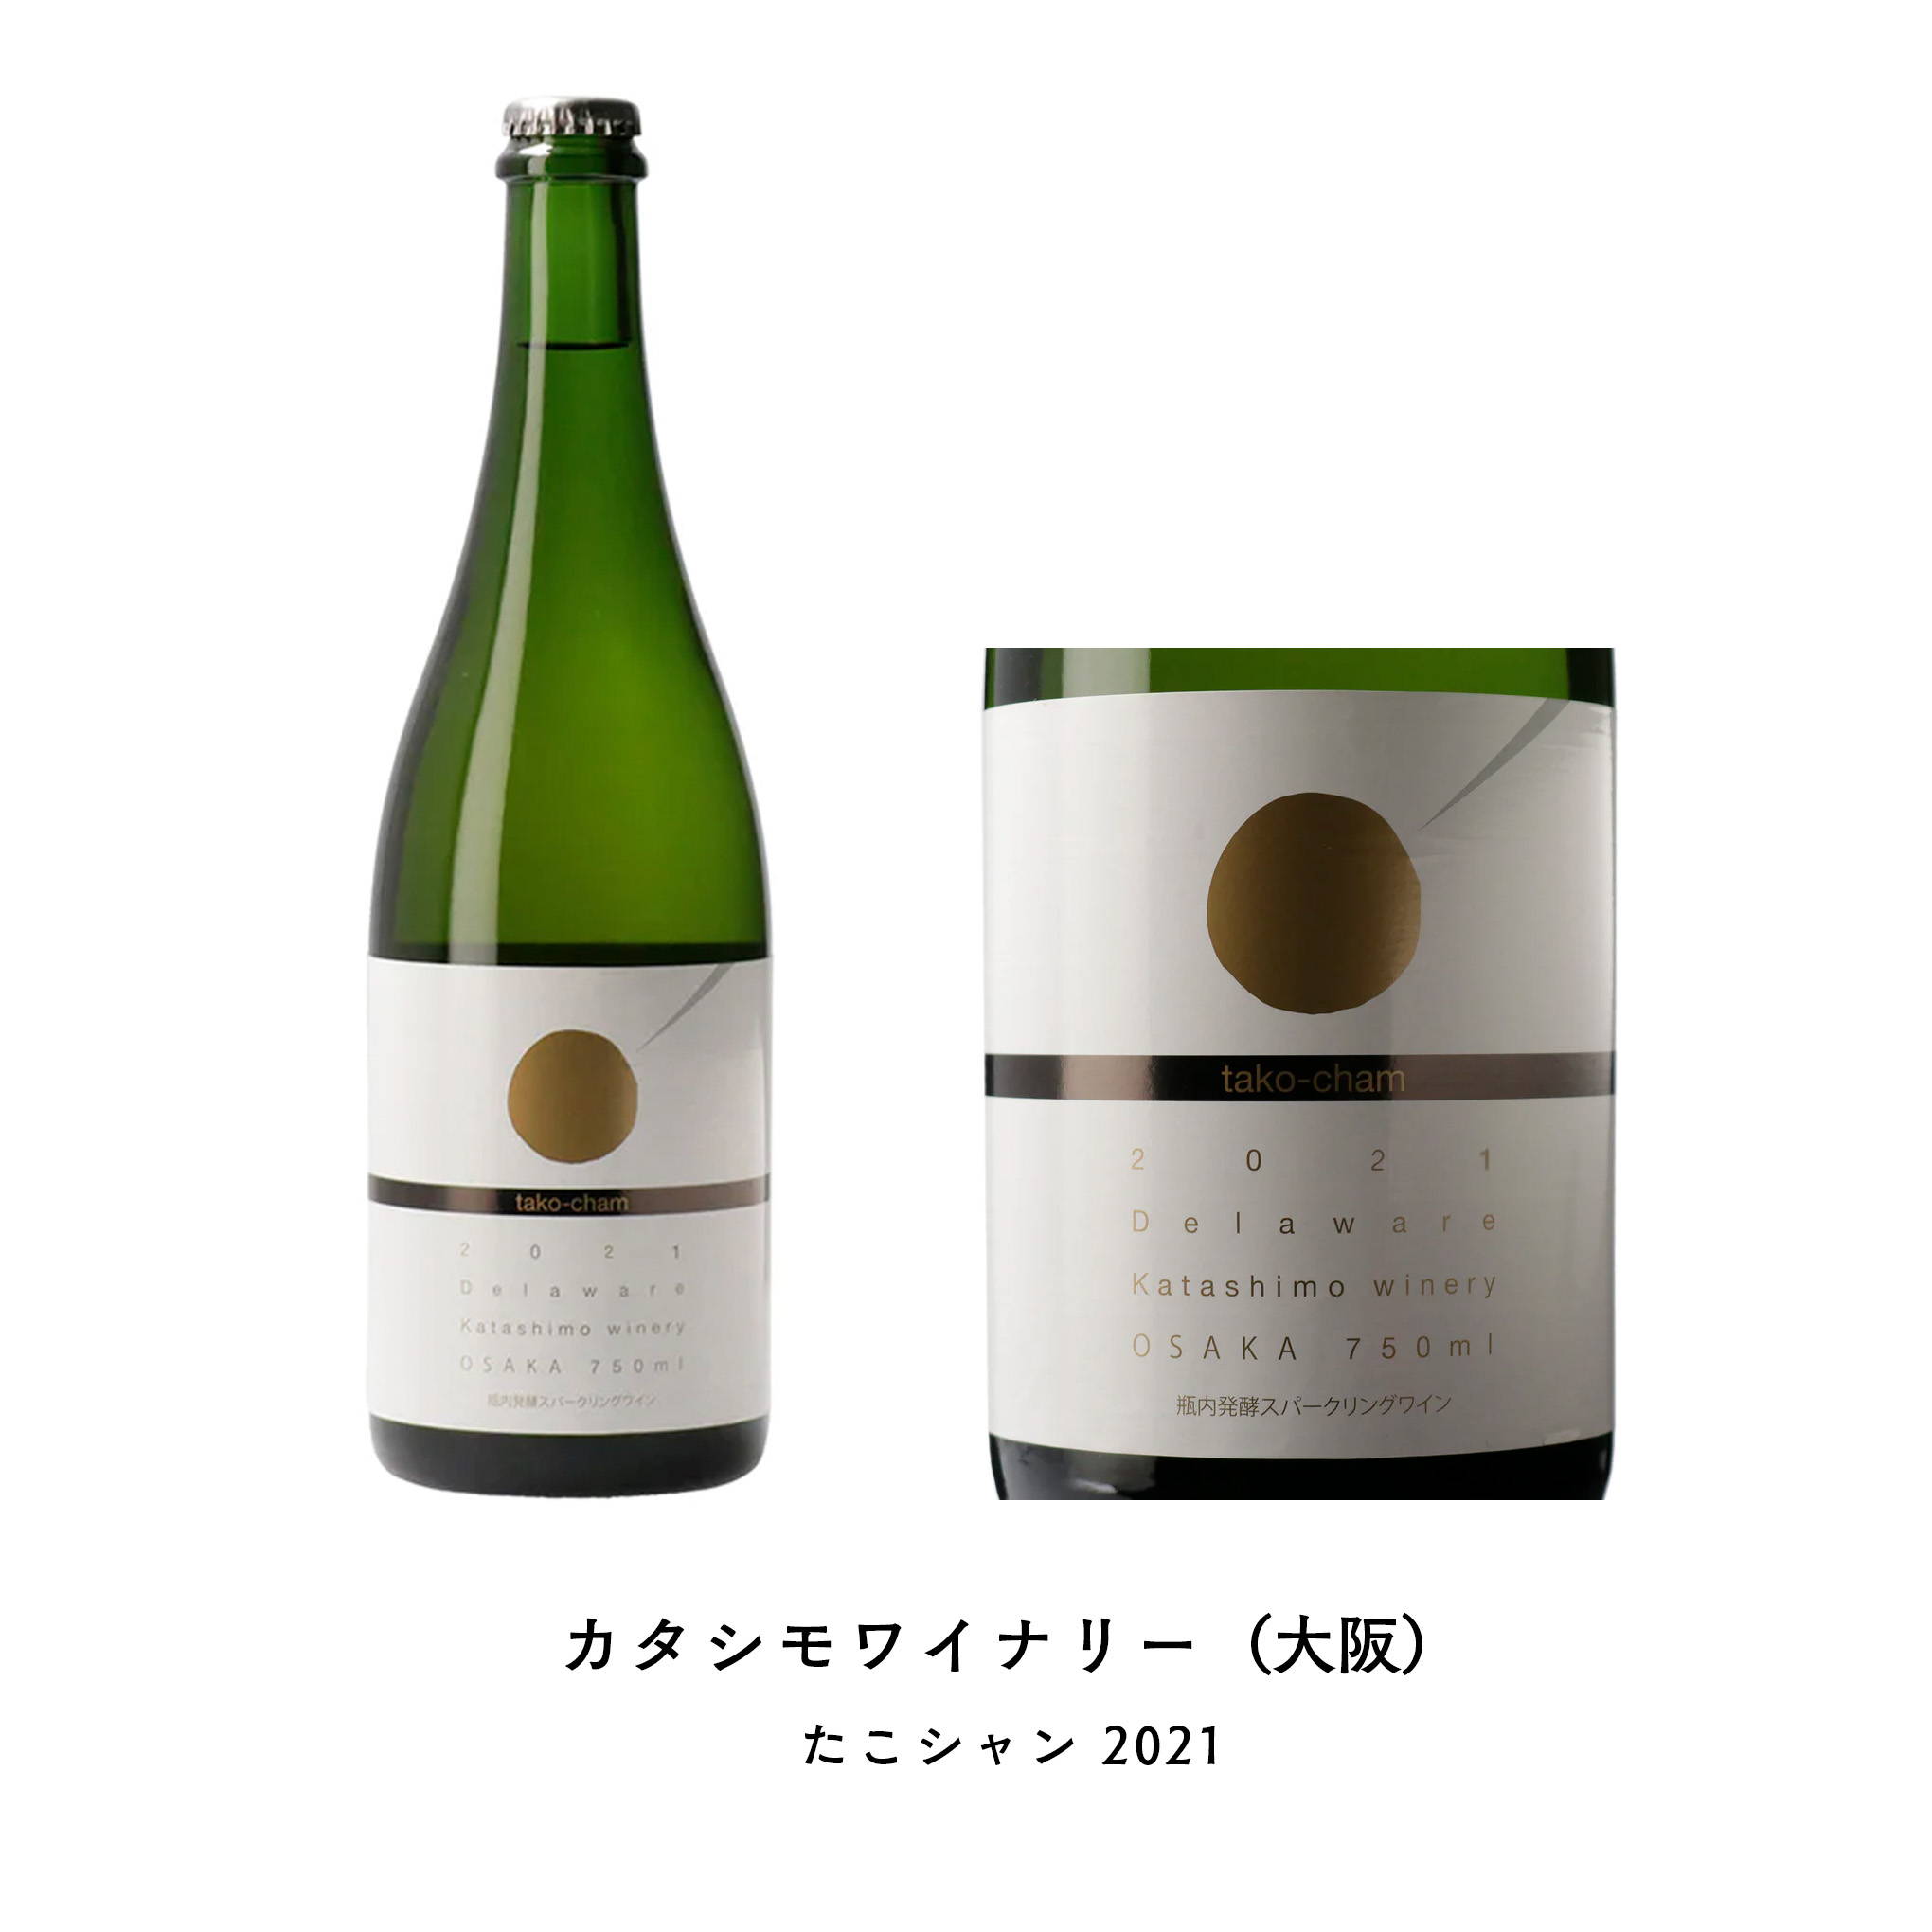 粉もんを愛する人は常備しておきたい1本！大阪の老舗ワイナリーが提案する「たこ焼き」に合うデラウェアの本格スパークリングワイン。